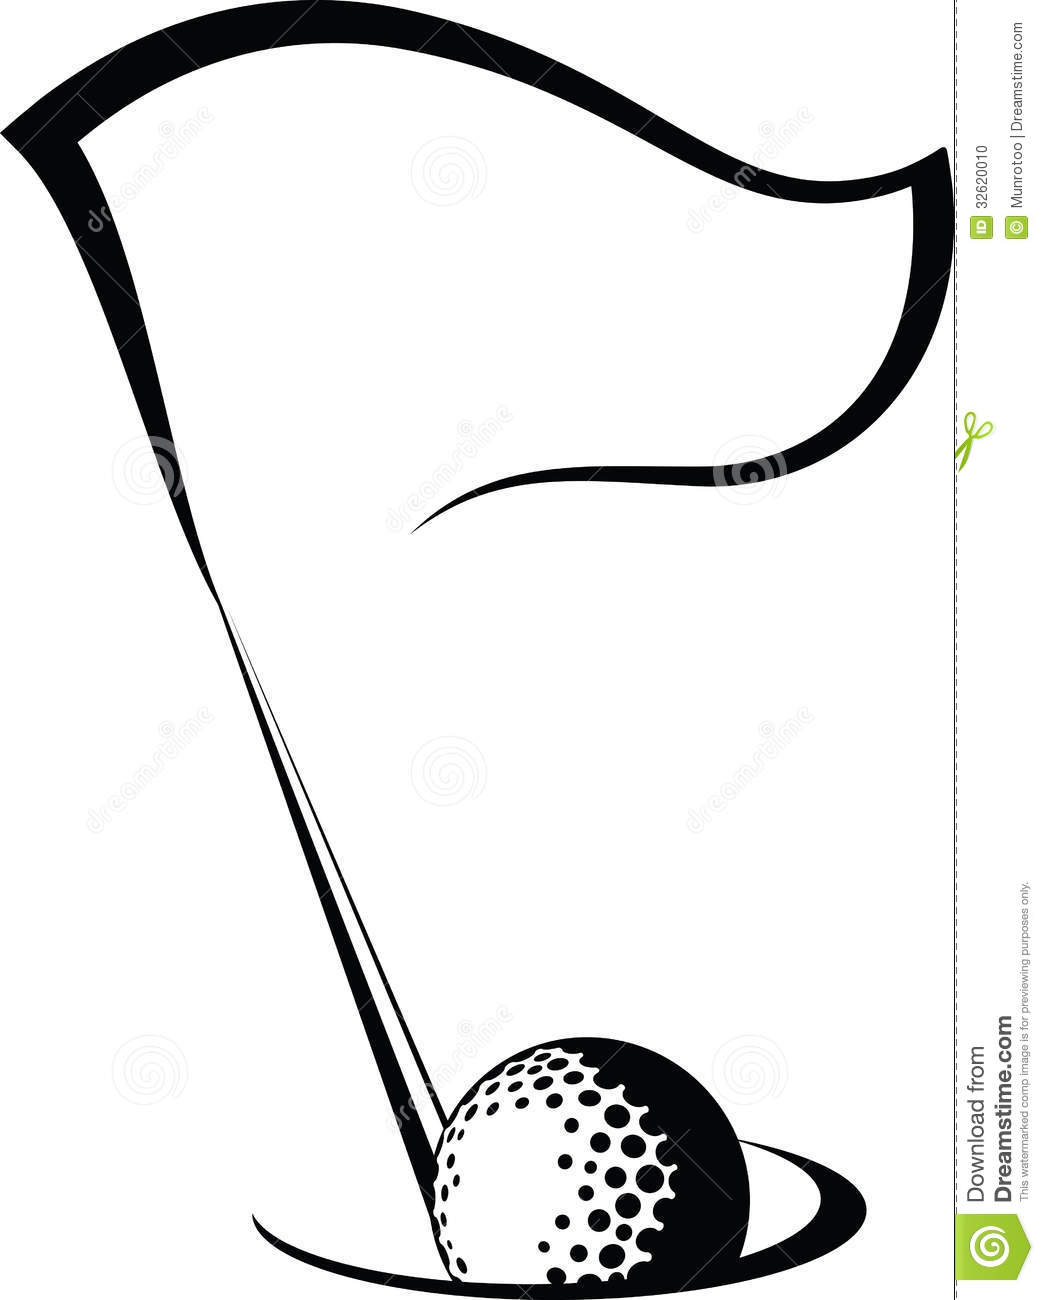 Golf Flag Clip Art Black and White